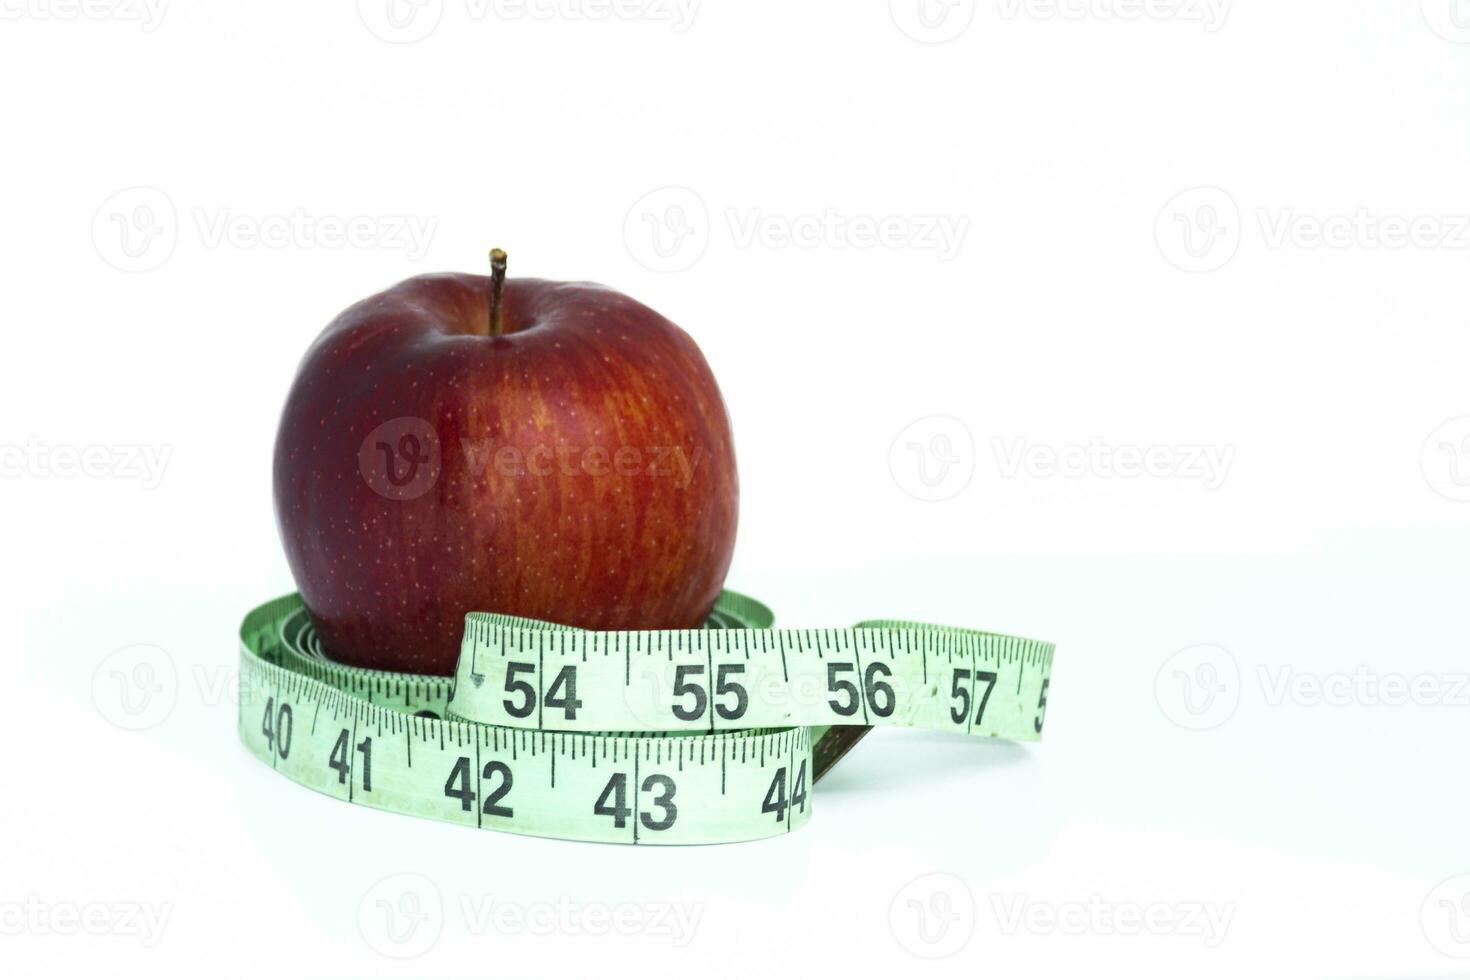 rot Apfel mit Grün Messung Band auf Weiß Hintergrund. foto